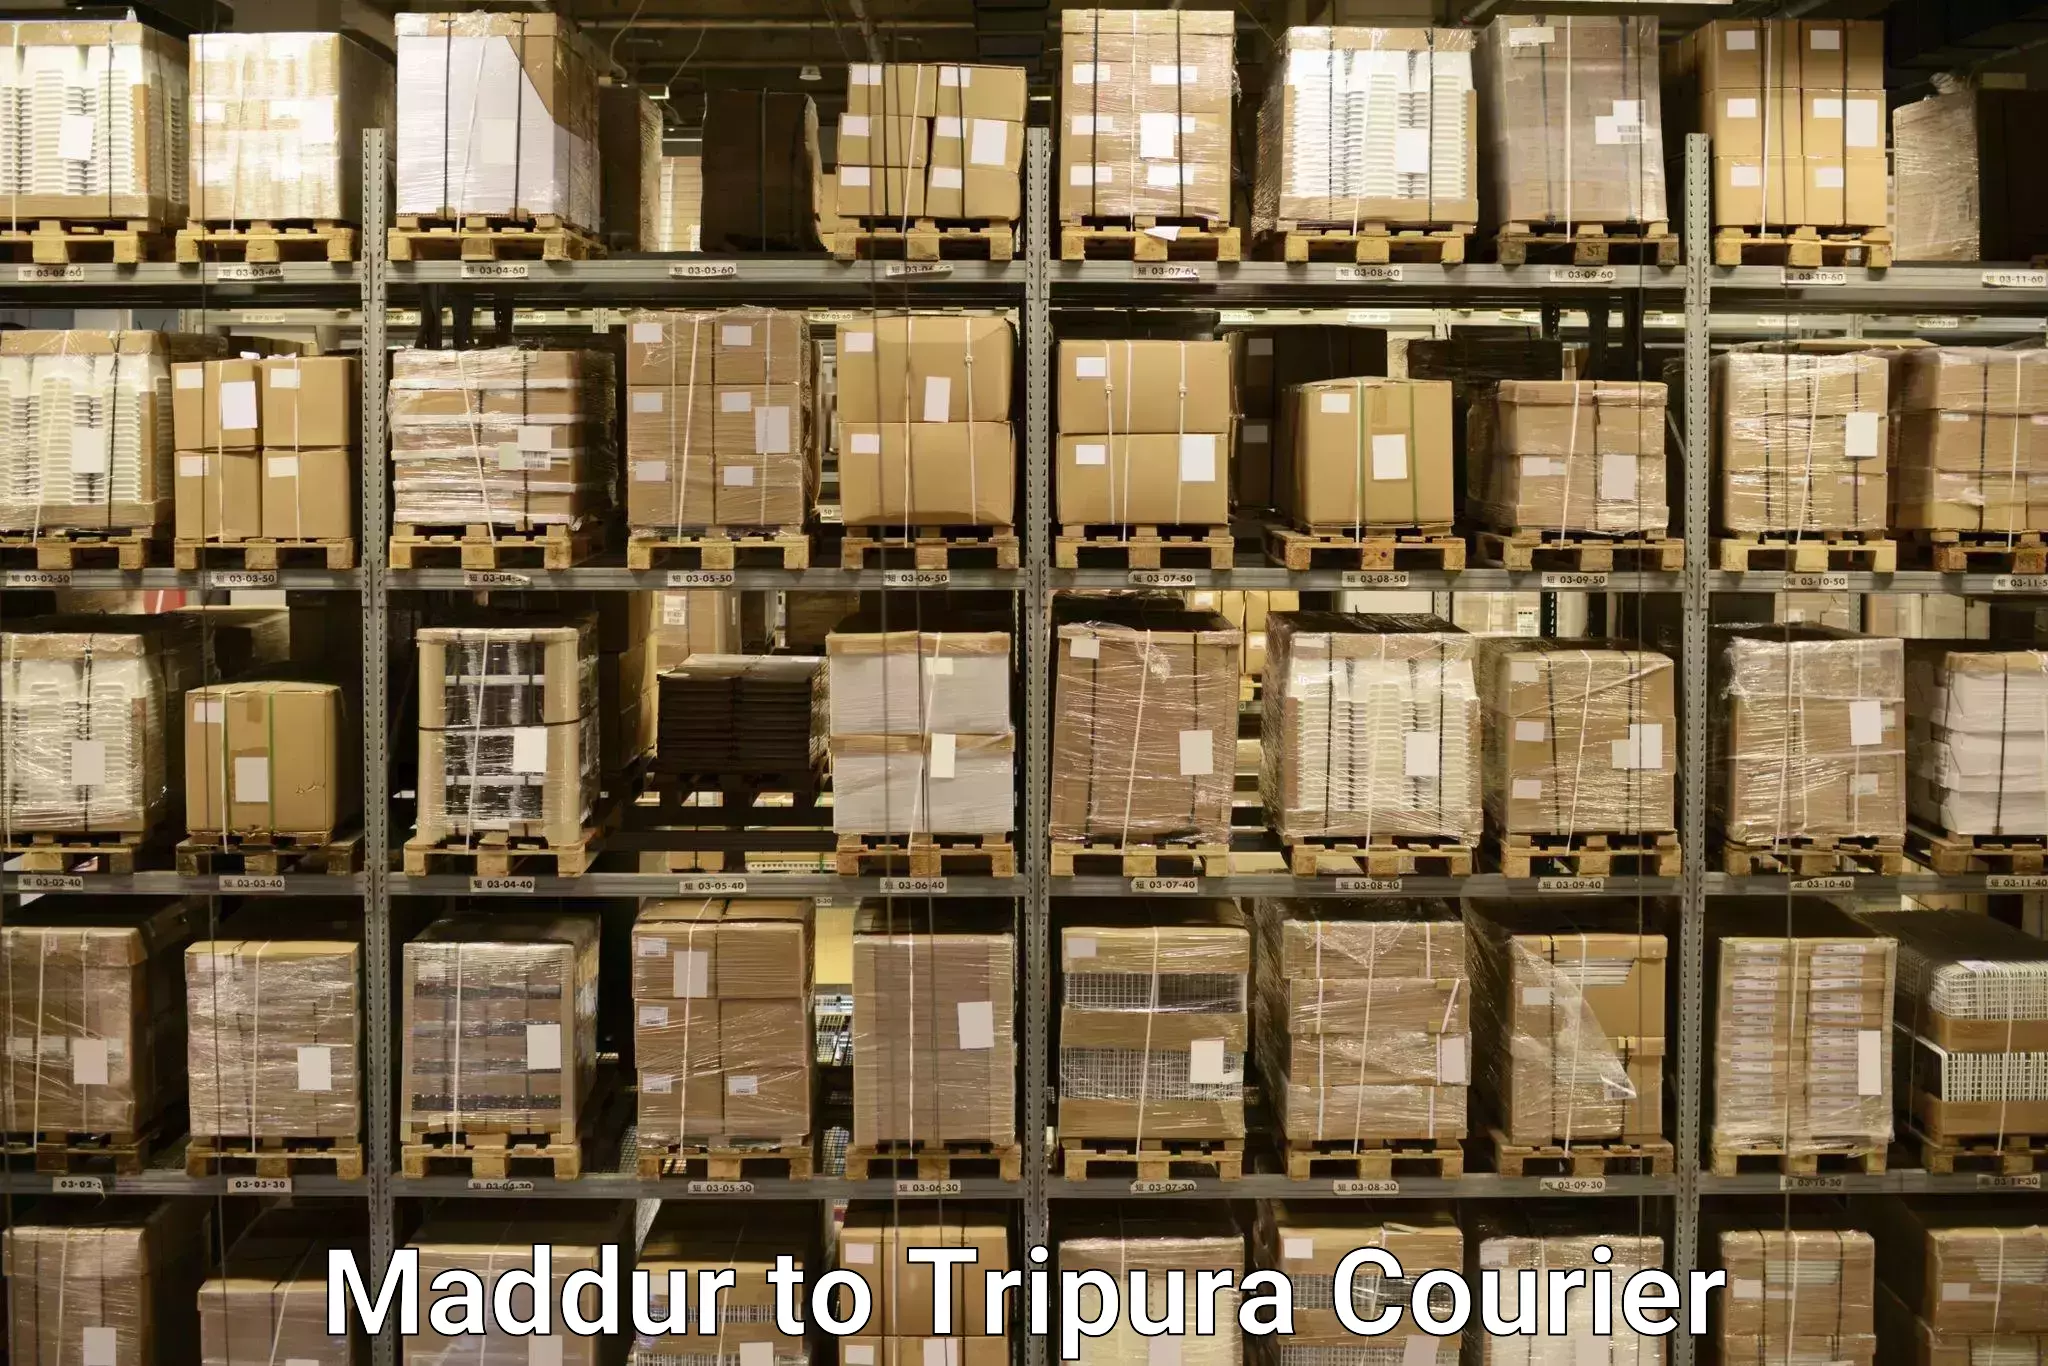 Door-to-door baggage service in Maddur to Tripura